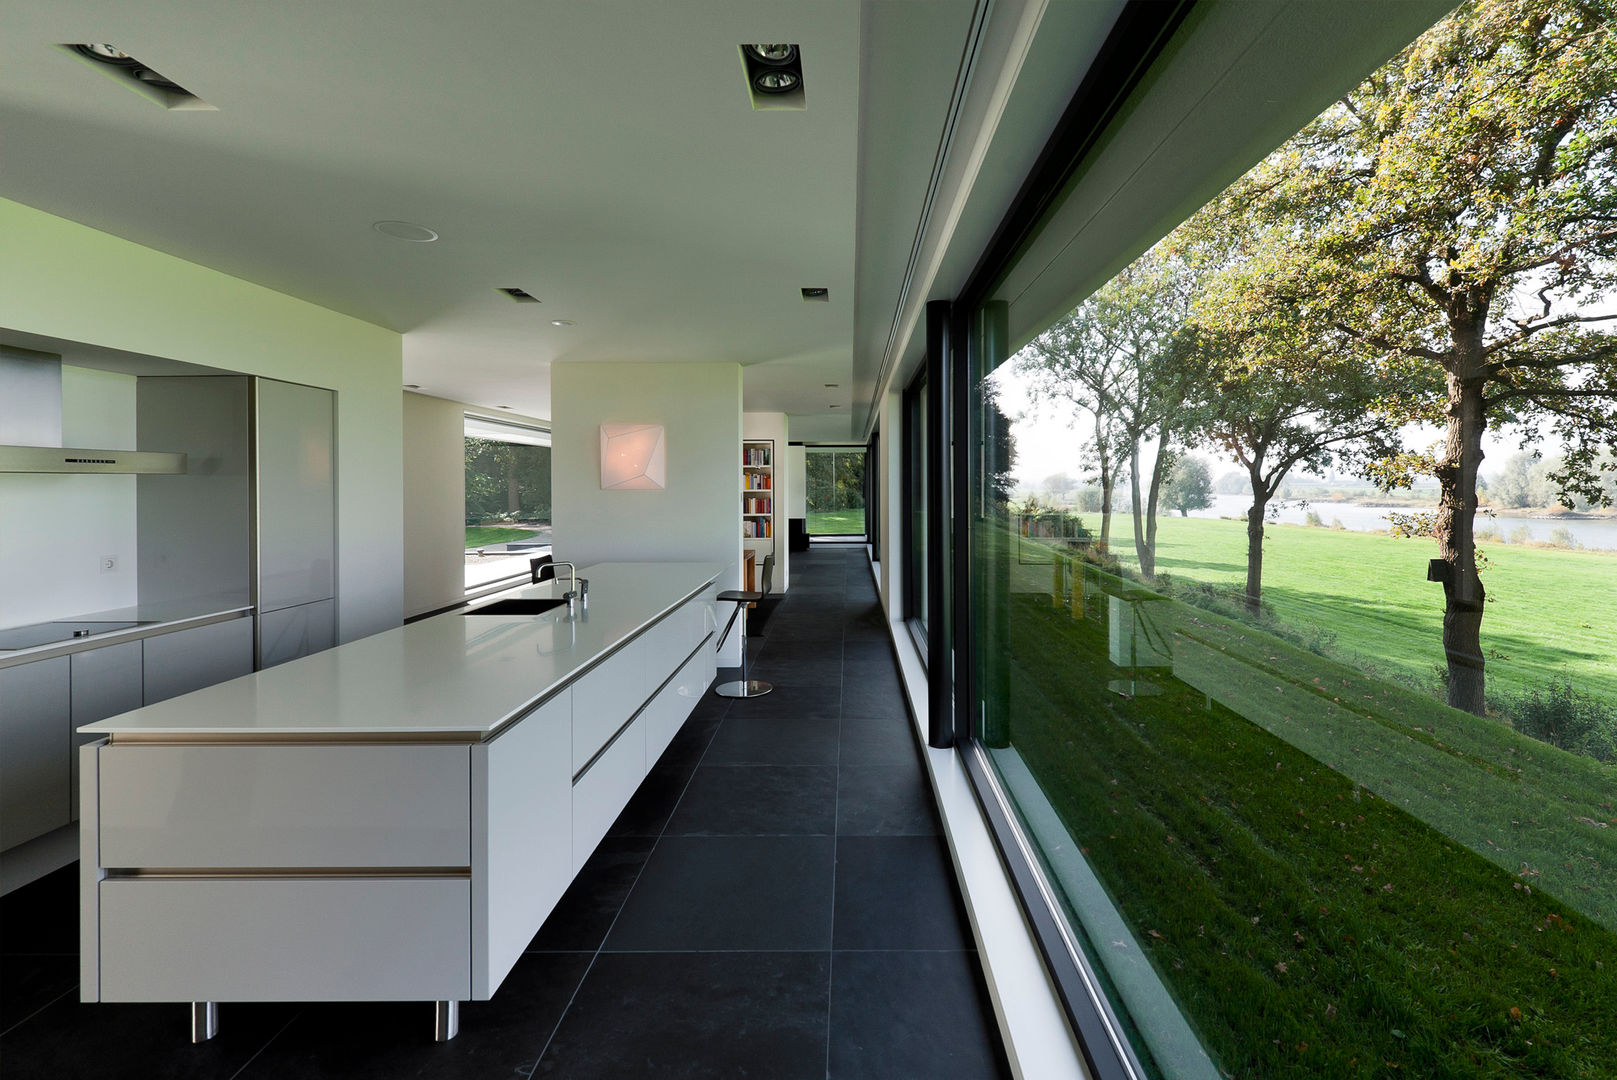 WOONHUIS GORSSEL, Maas Architecten Maas Architecten Modern style kitchen